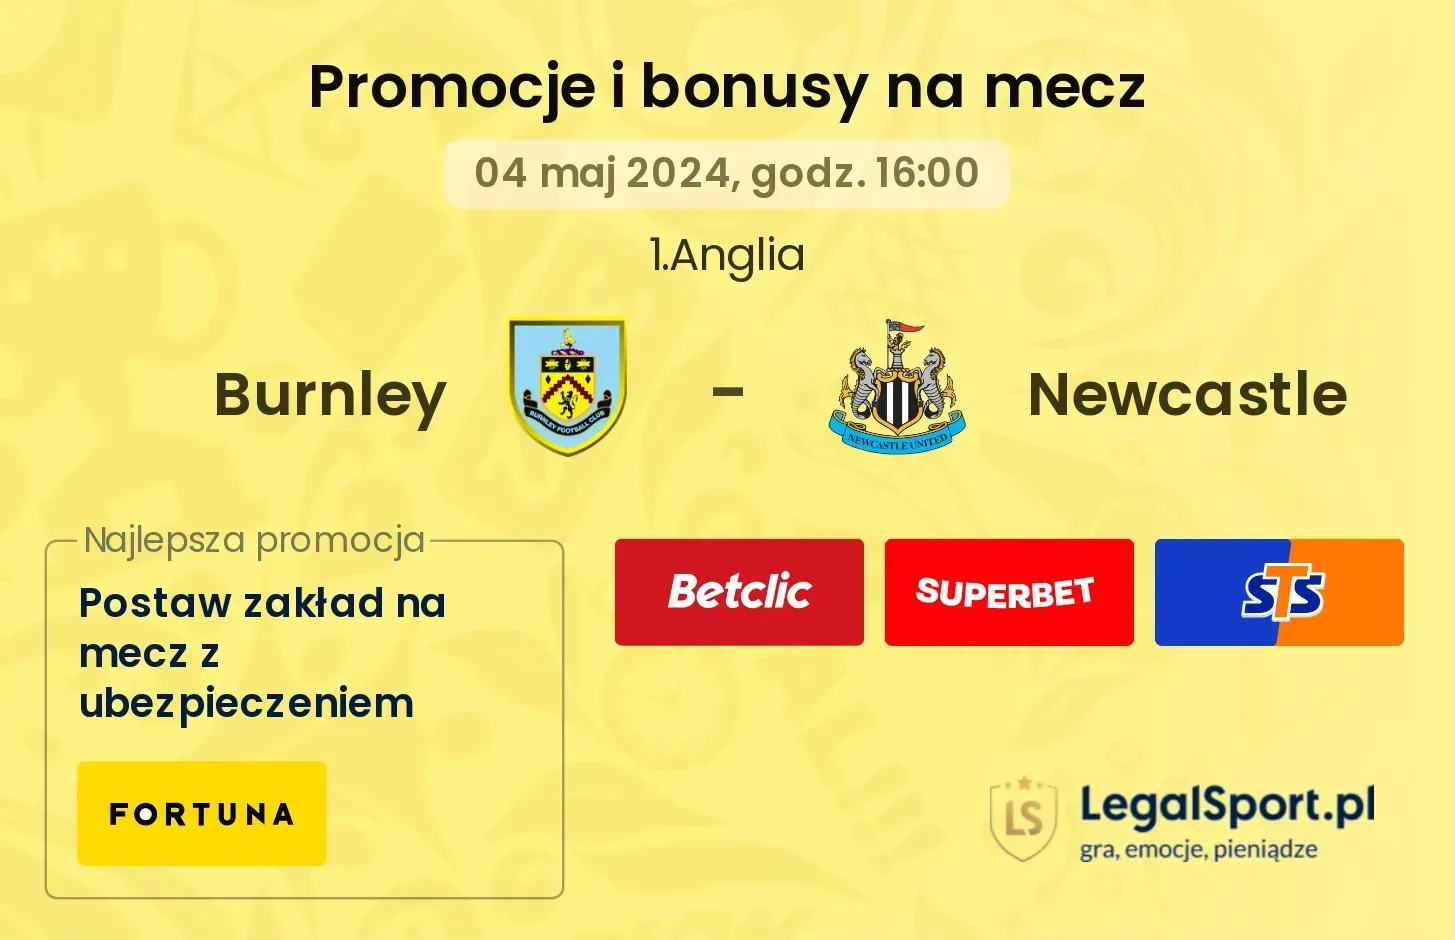 Burnley - Newcastle promocje bonusy na mecz